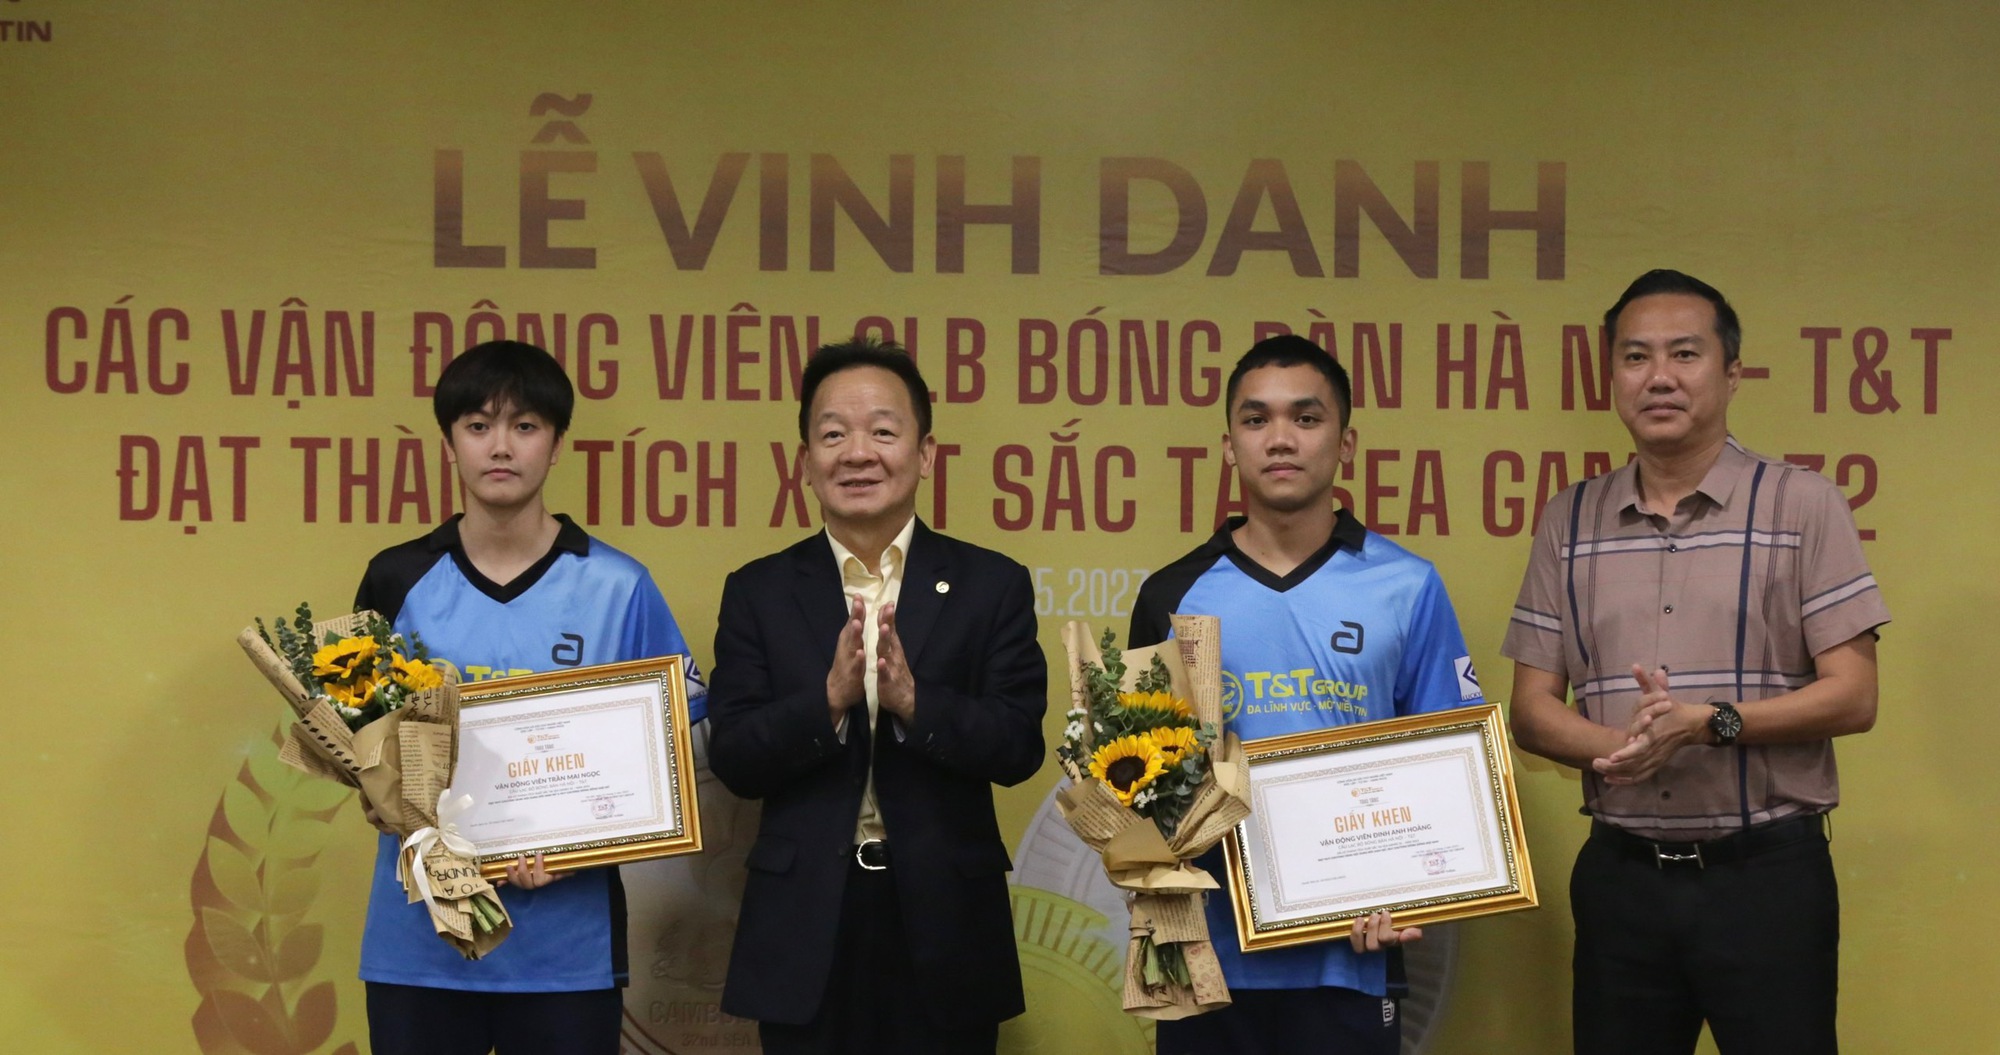 Giành thưởng sau SEA Games 32, Trần Mai Ngọc gửi tiết kiệm để mở CLB bóng bàn - Ảnh 1.